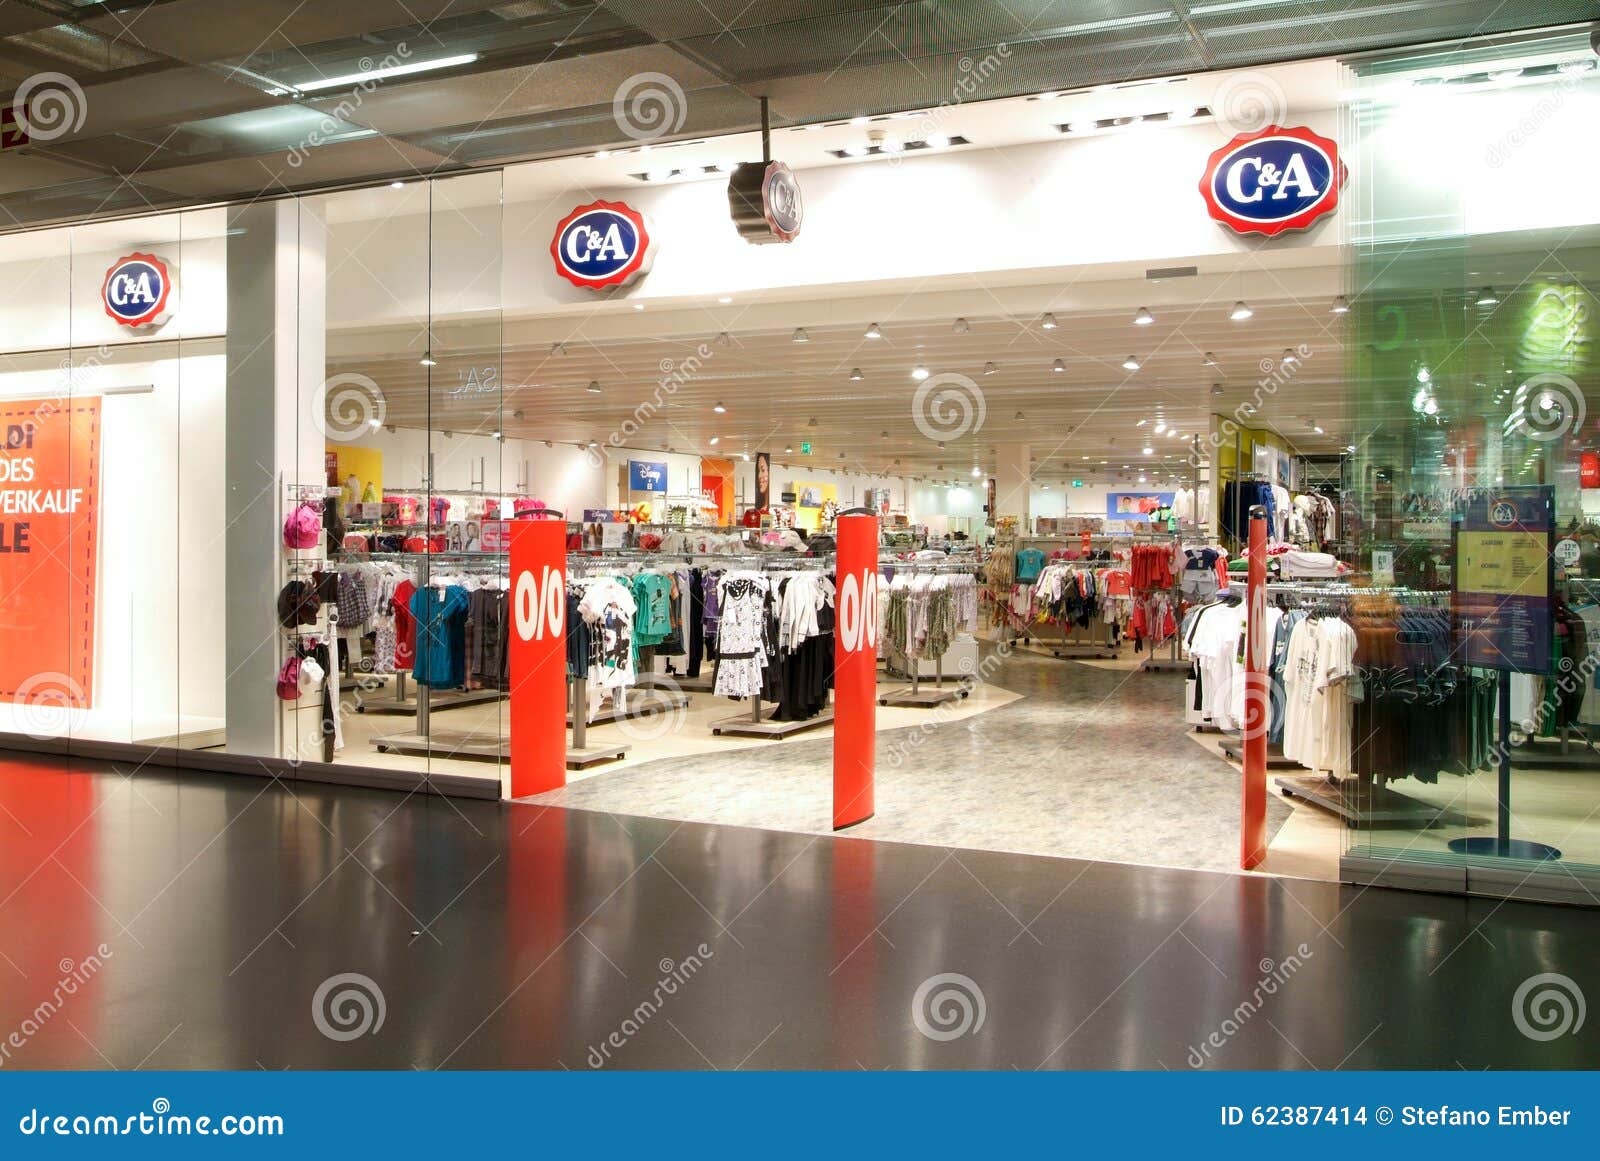 Interior De La Tienda De La De La Moda De C&a Imagen de archivo editorial - Imagen de centro, industria: 62387414